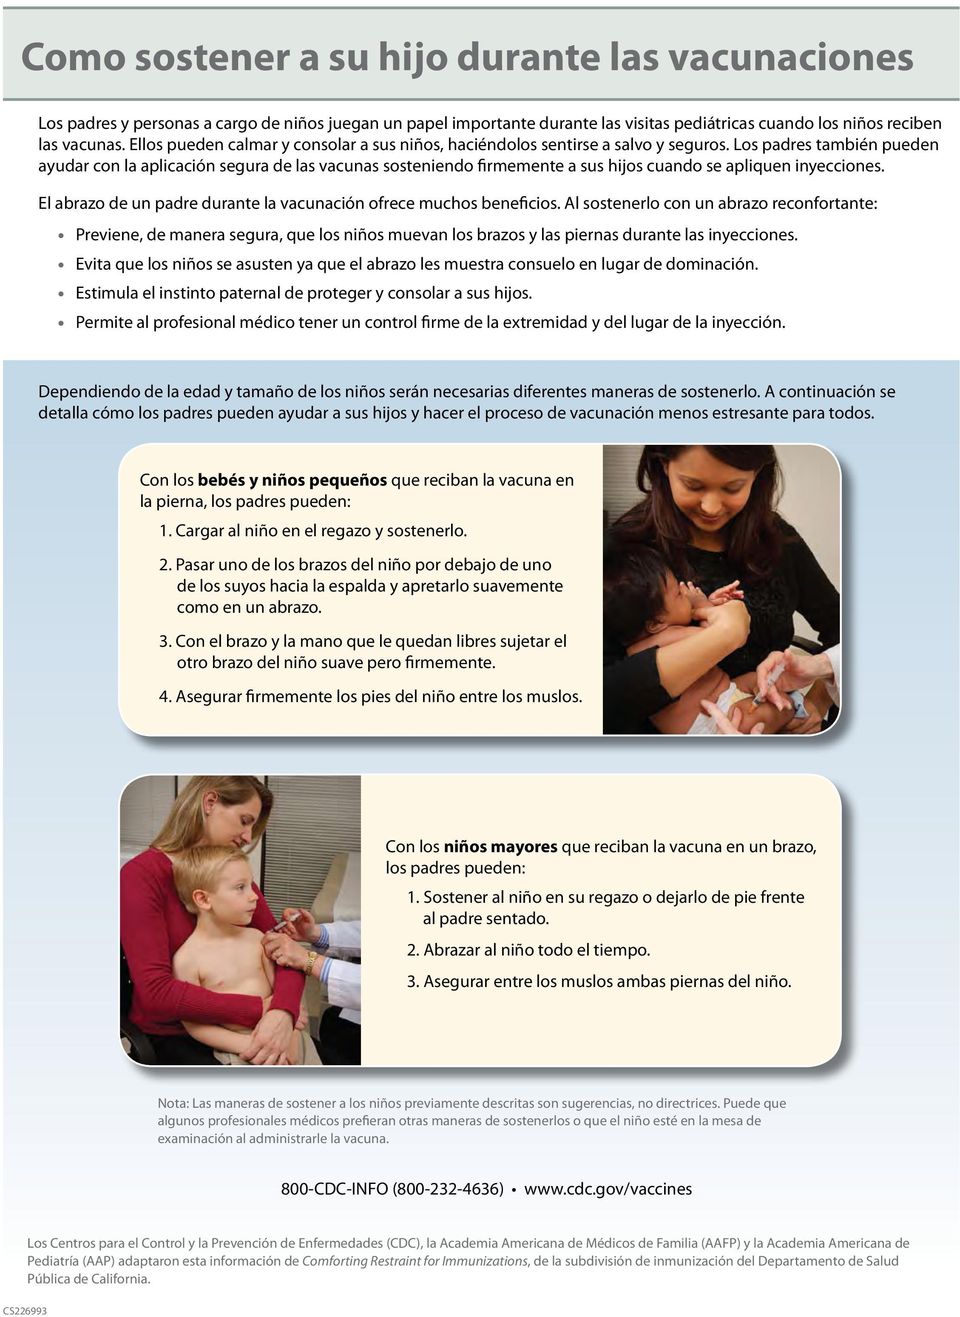 Los padres también pueden ayudar con la aplicación segura de las vacunas sosteniendo firmemente a sus hijos cuando se apliquen inyecciones.